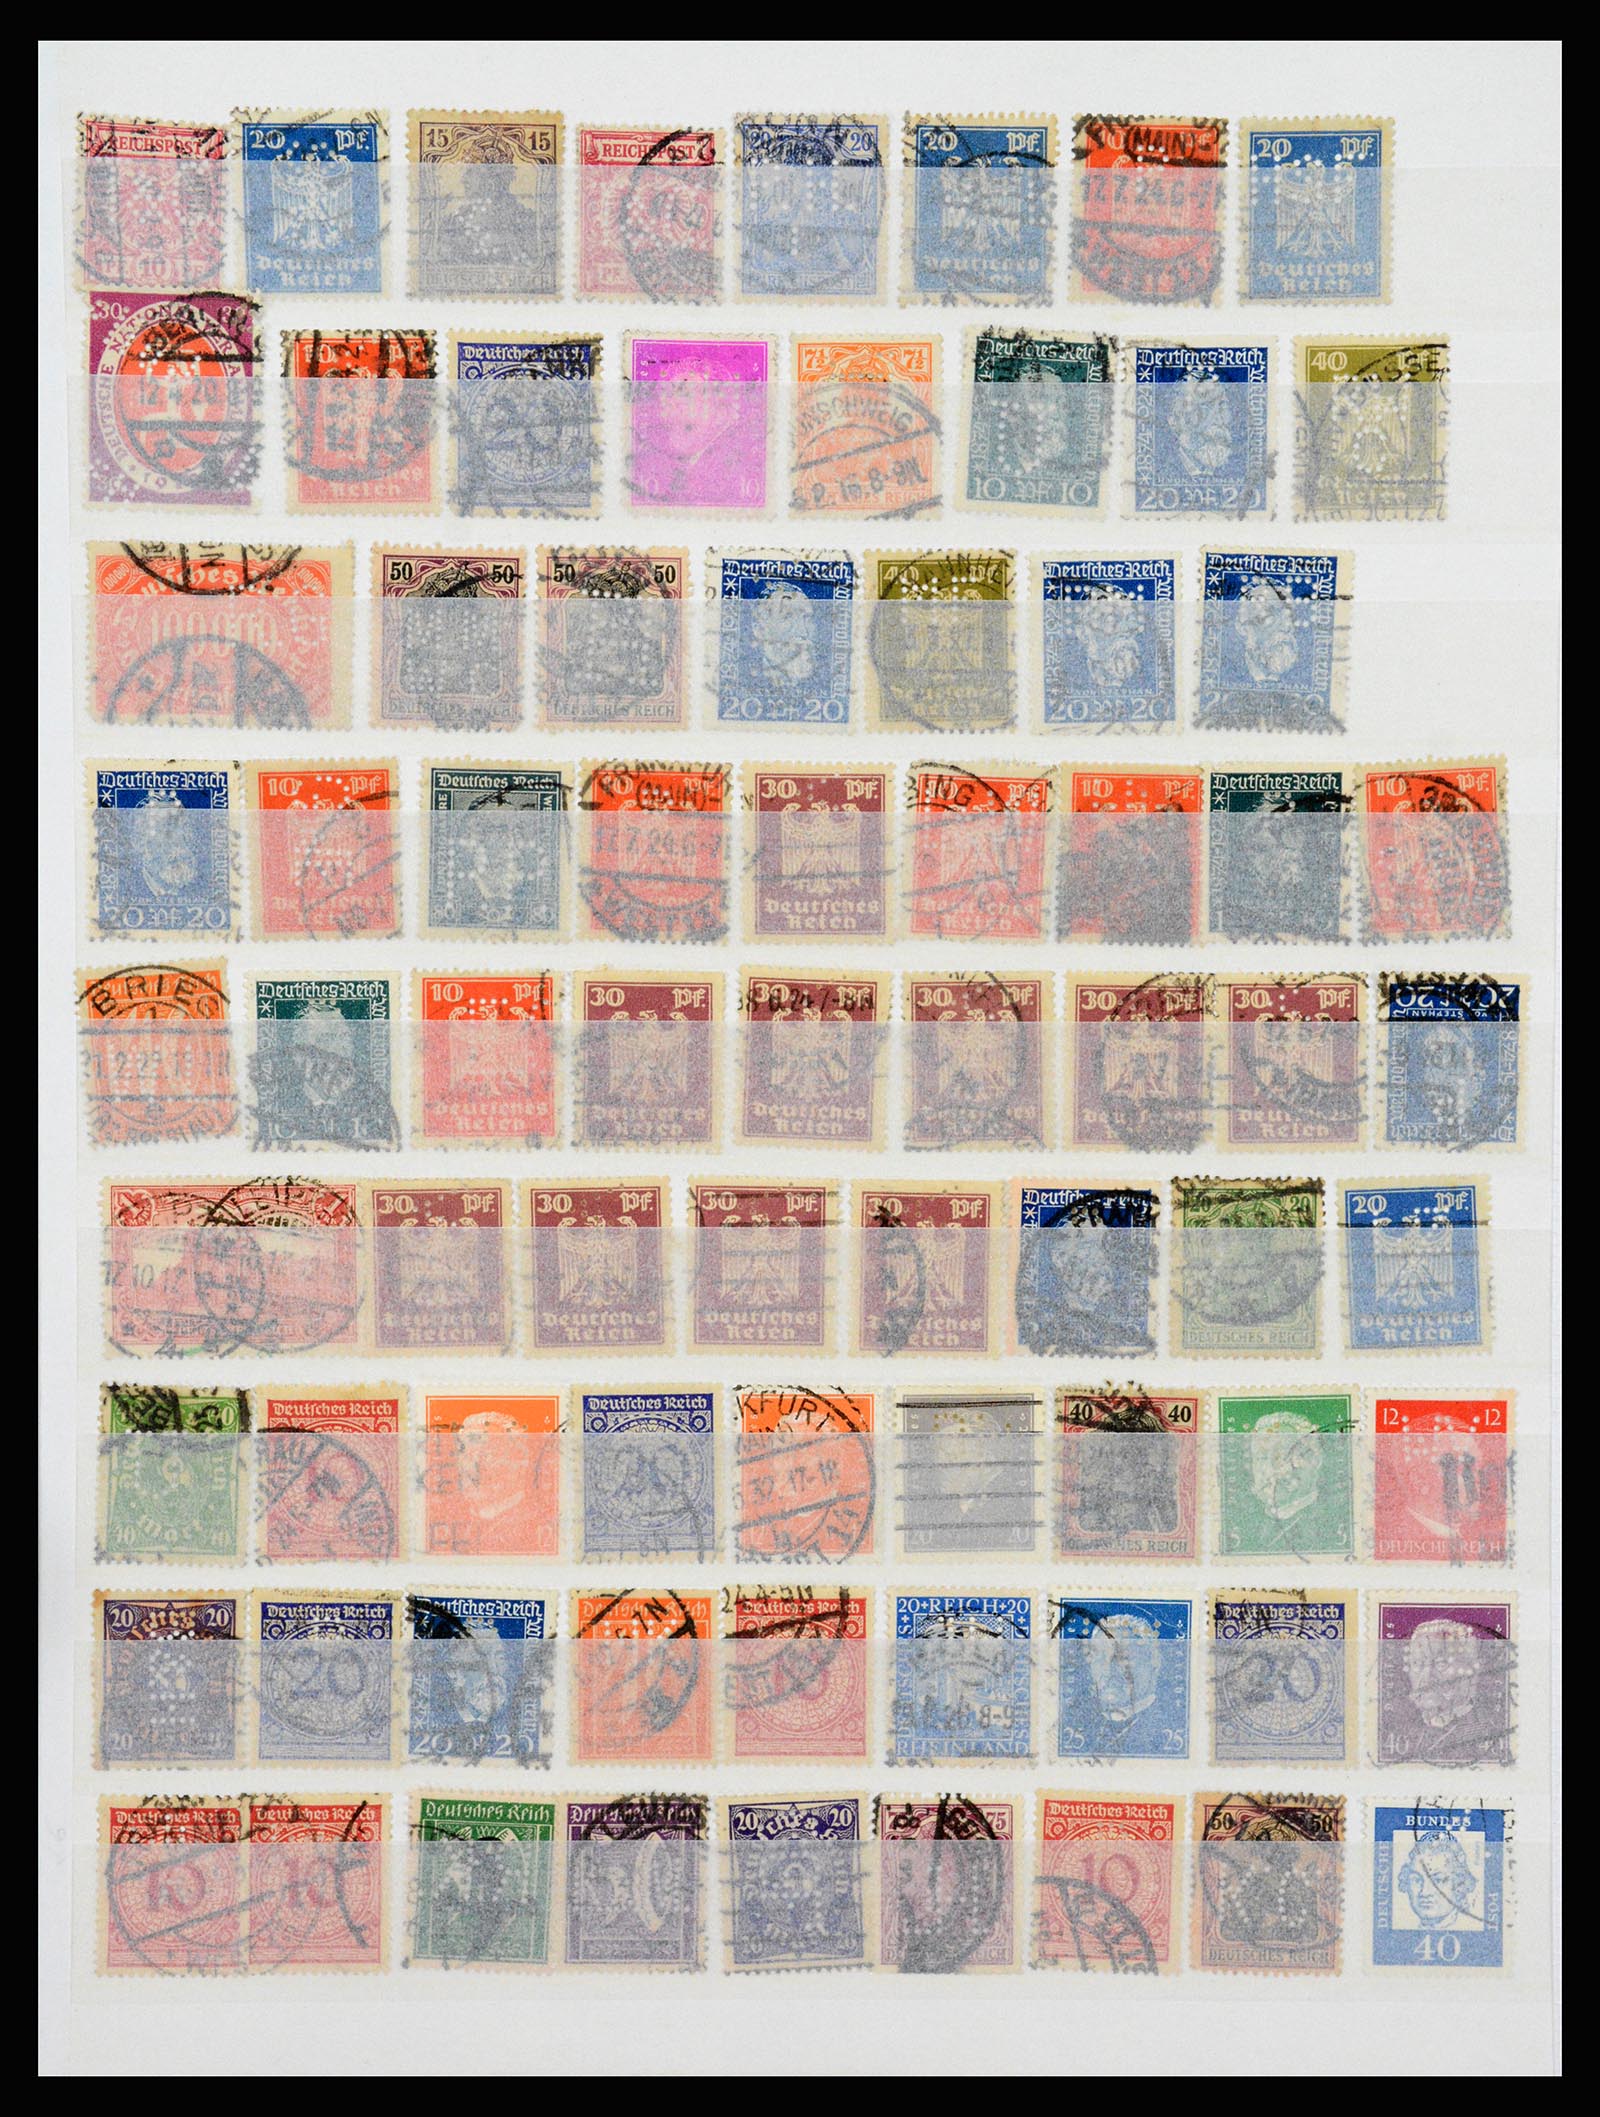 37254 004 - Stamp collection 37254 German Reich perfins 1900-1945.